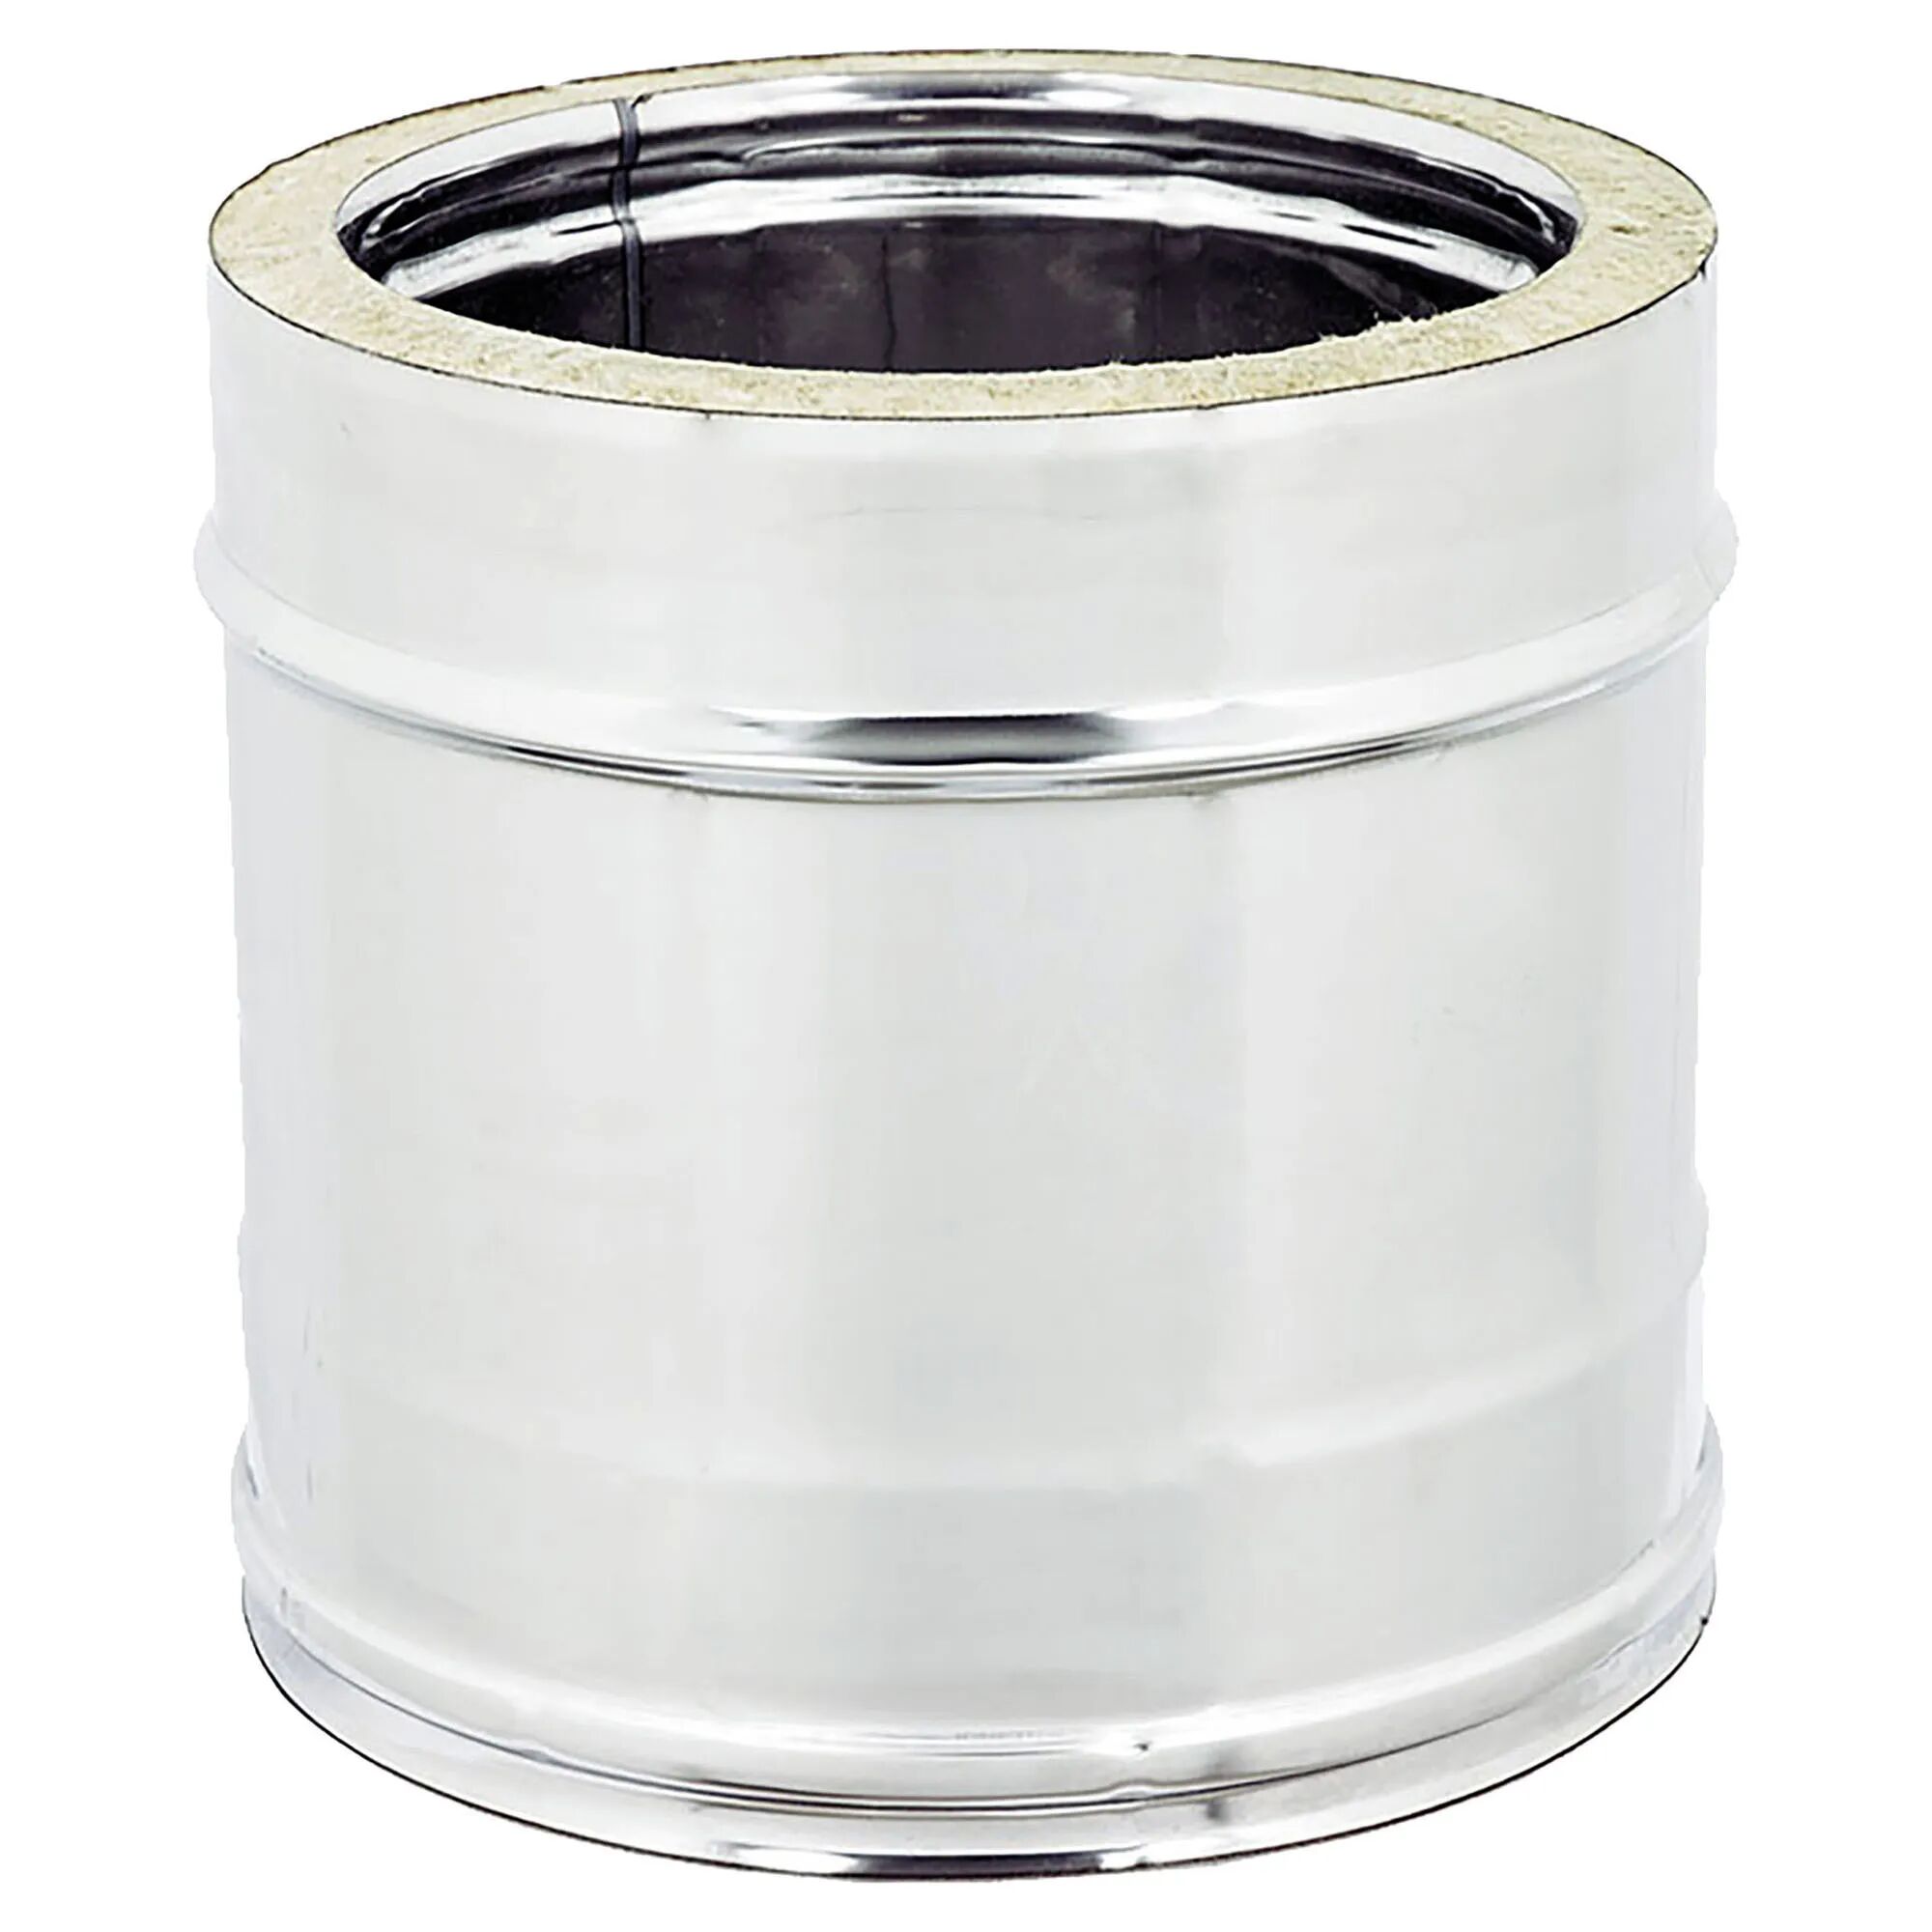 Zinco TUBO LINEARE INOX DOPPIA PARETE 316-304 Ø 100 mm L 250 SPESSORE 0,5 mm